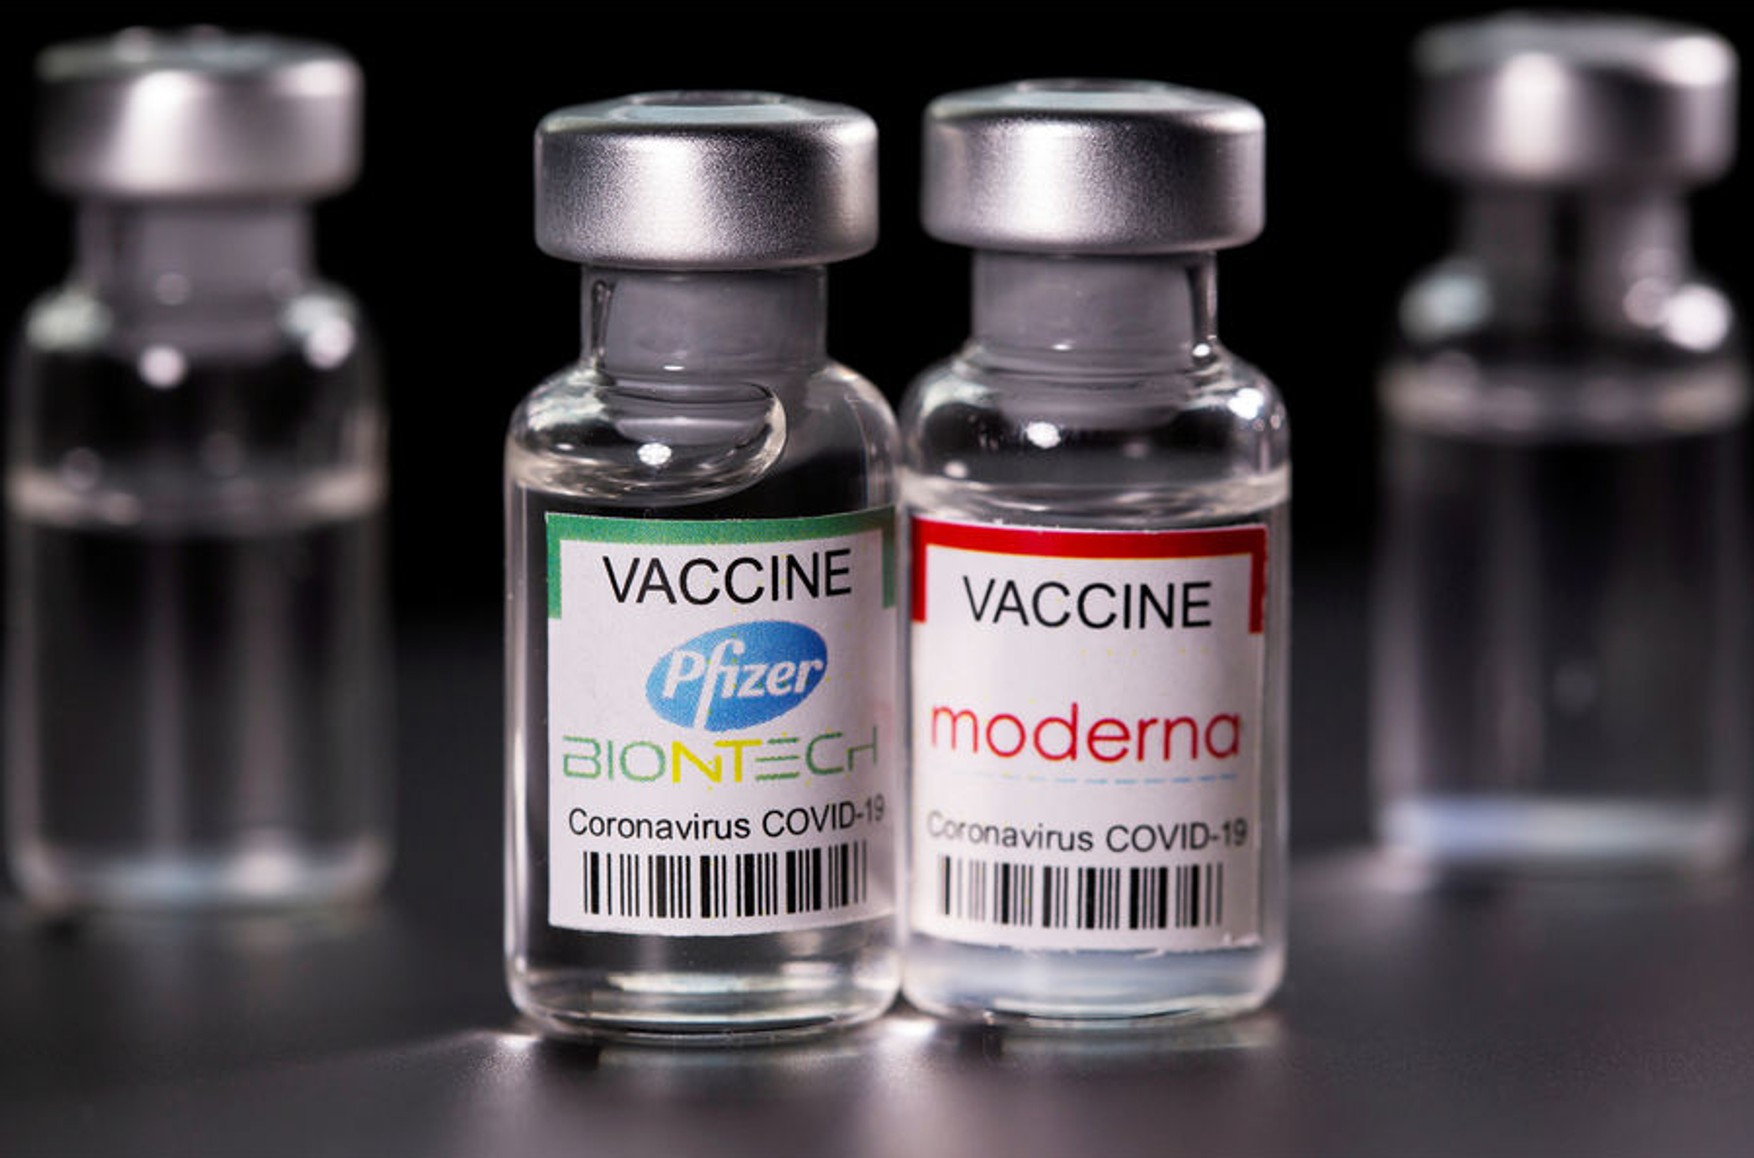 Pfizer і Moderna підвищили ціни на свої вакцини від коронавируса. Уряди країн ЄС погодилися платити більш високу ціну